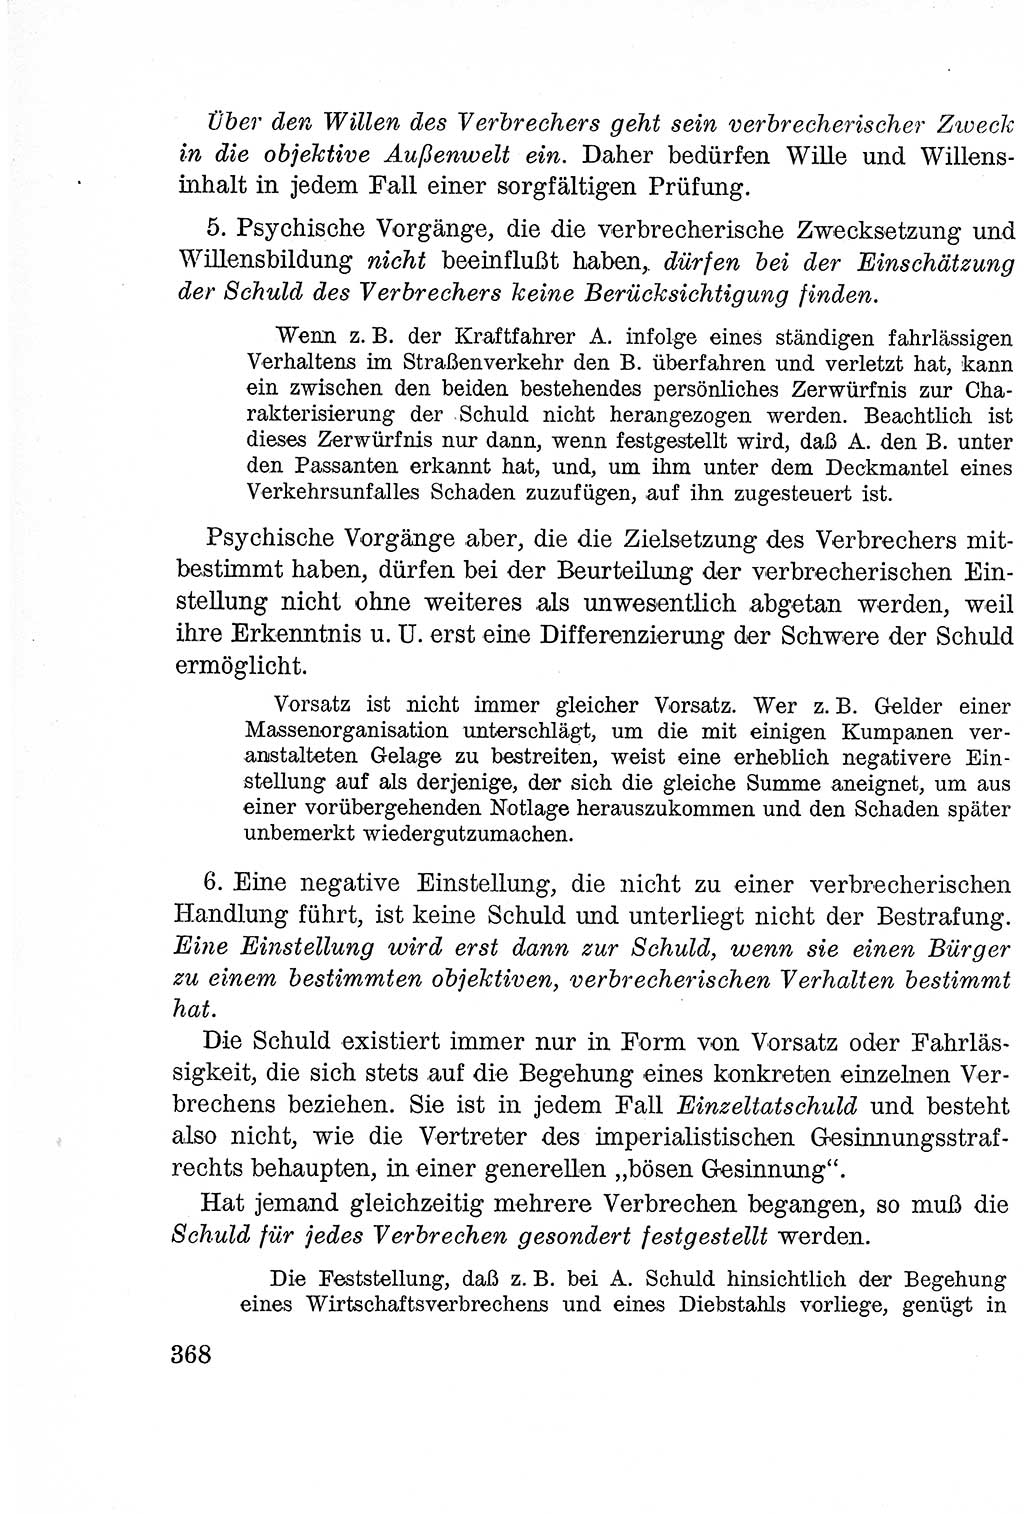 Lehrbuch des Strafrechts der Deutschen Demokratischen Republik (DDR), Allgemeiner Teil 1957, Seite 368 (Lb. Strafr. DDR AT 1957, S. 368)